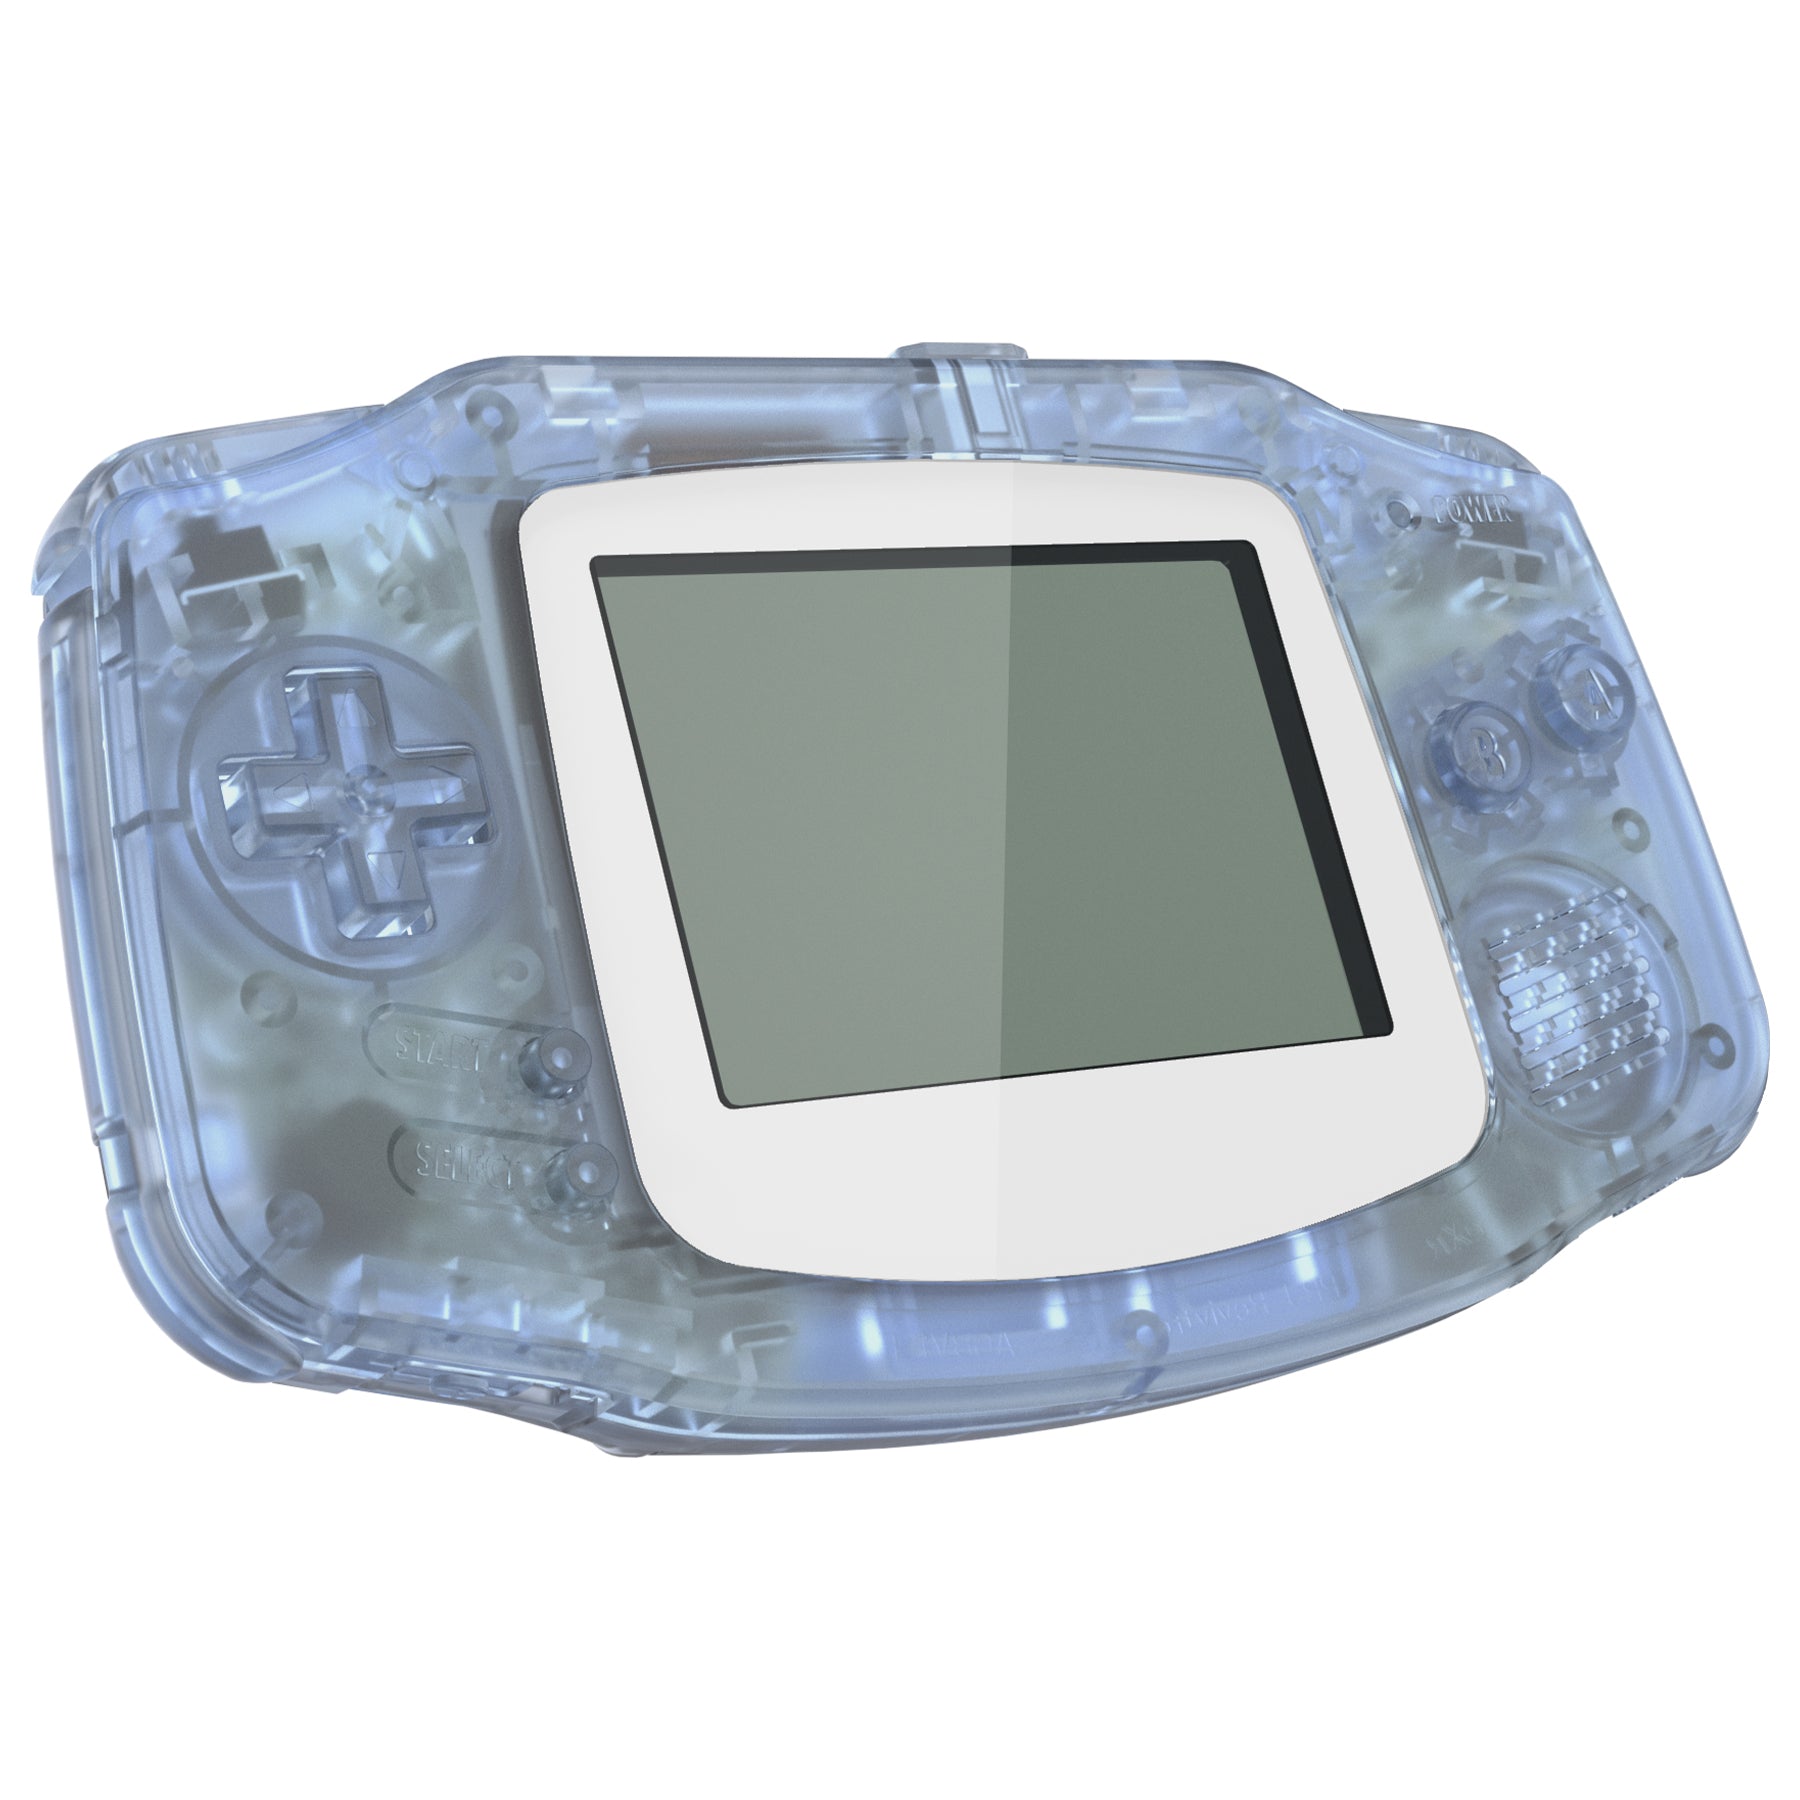 Game Boy Advance Console in Glacier